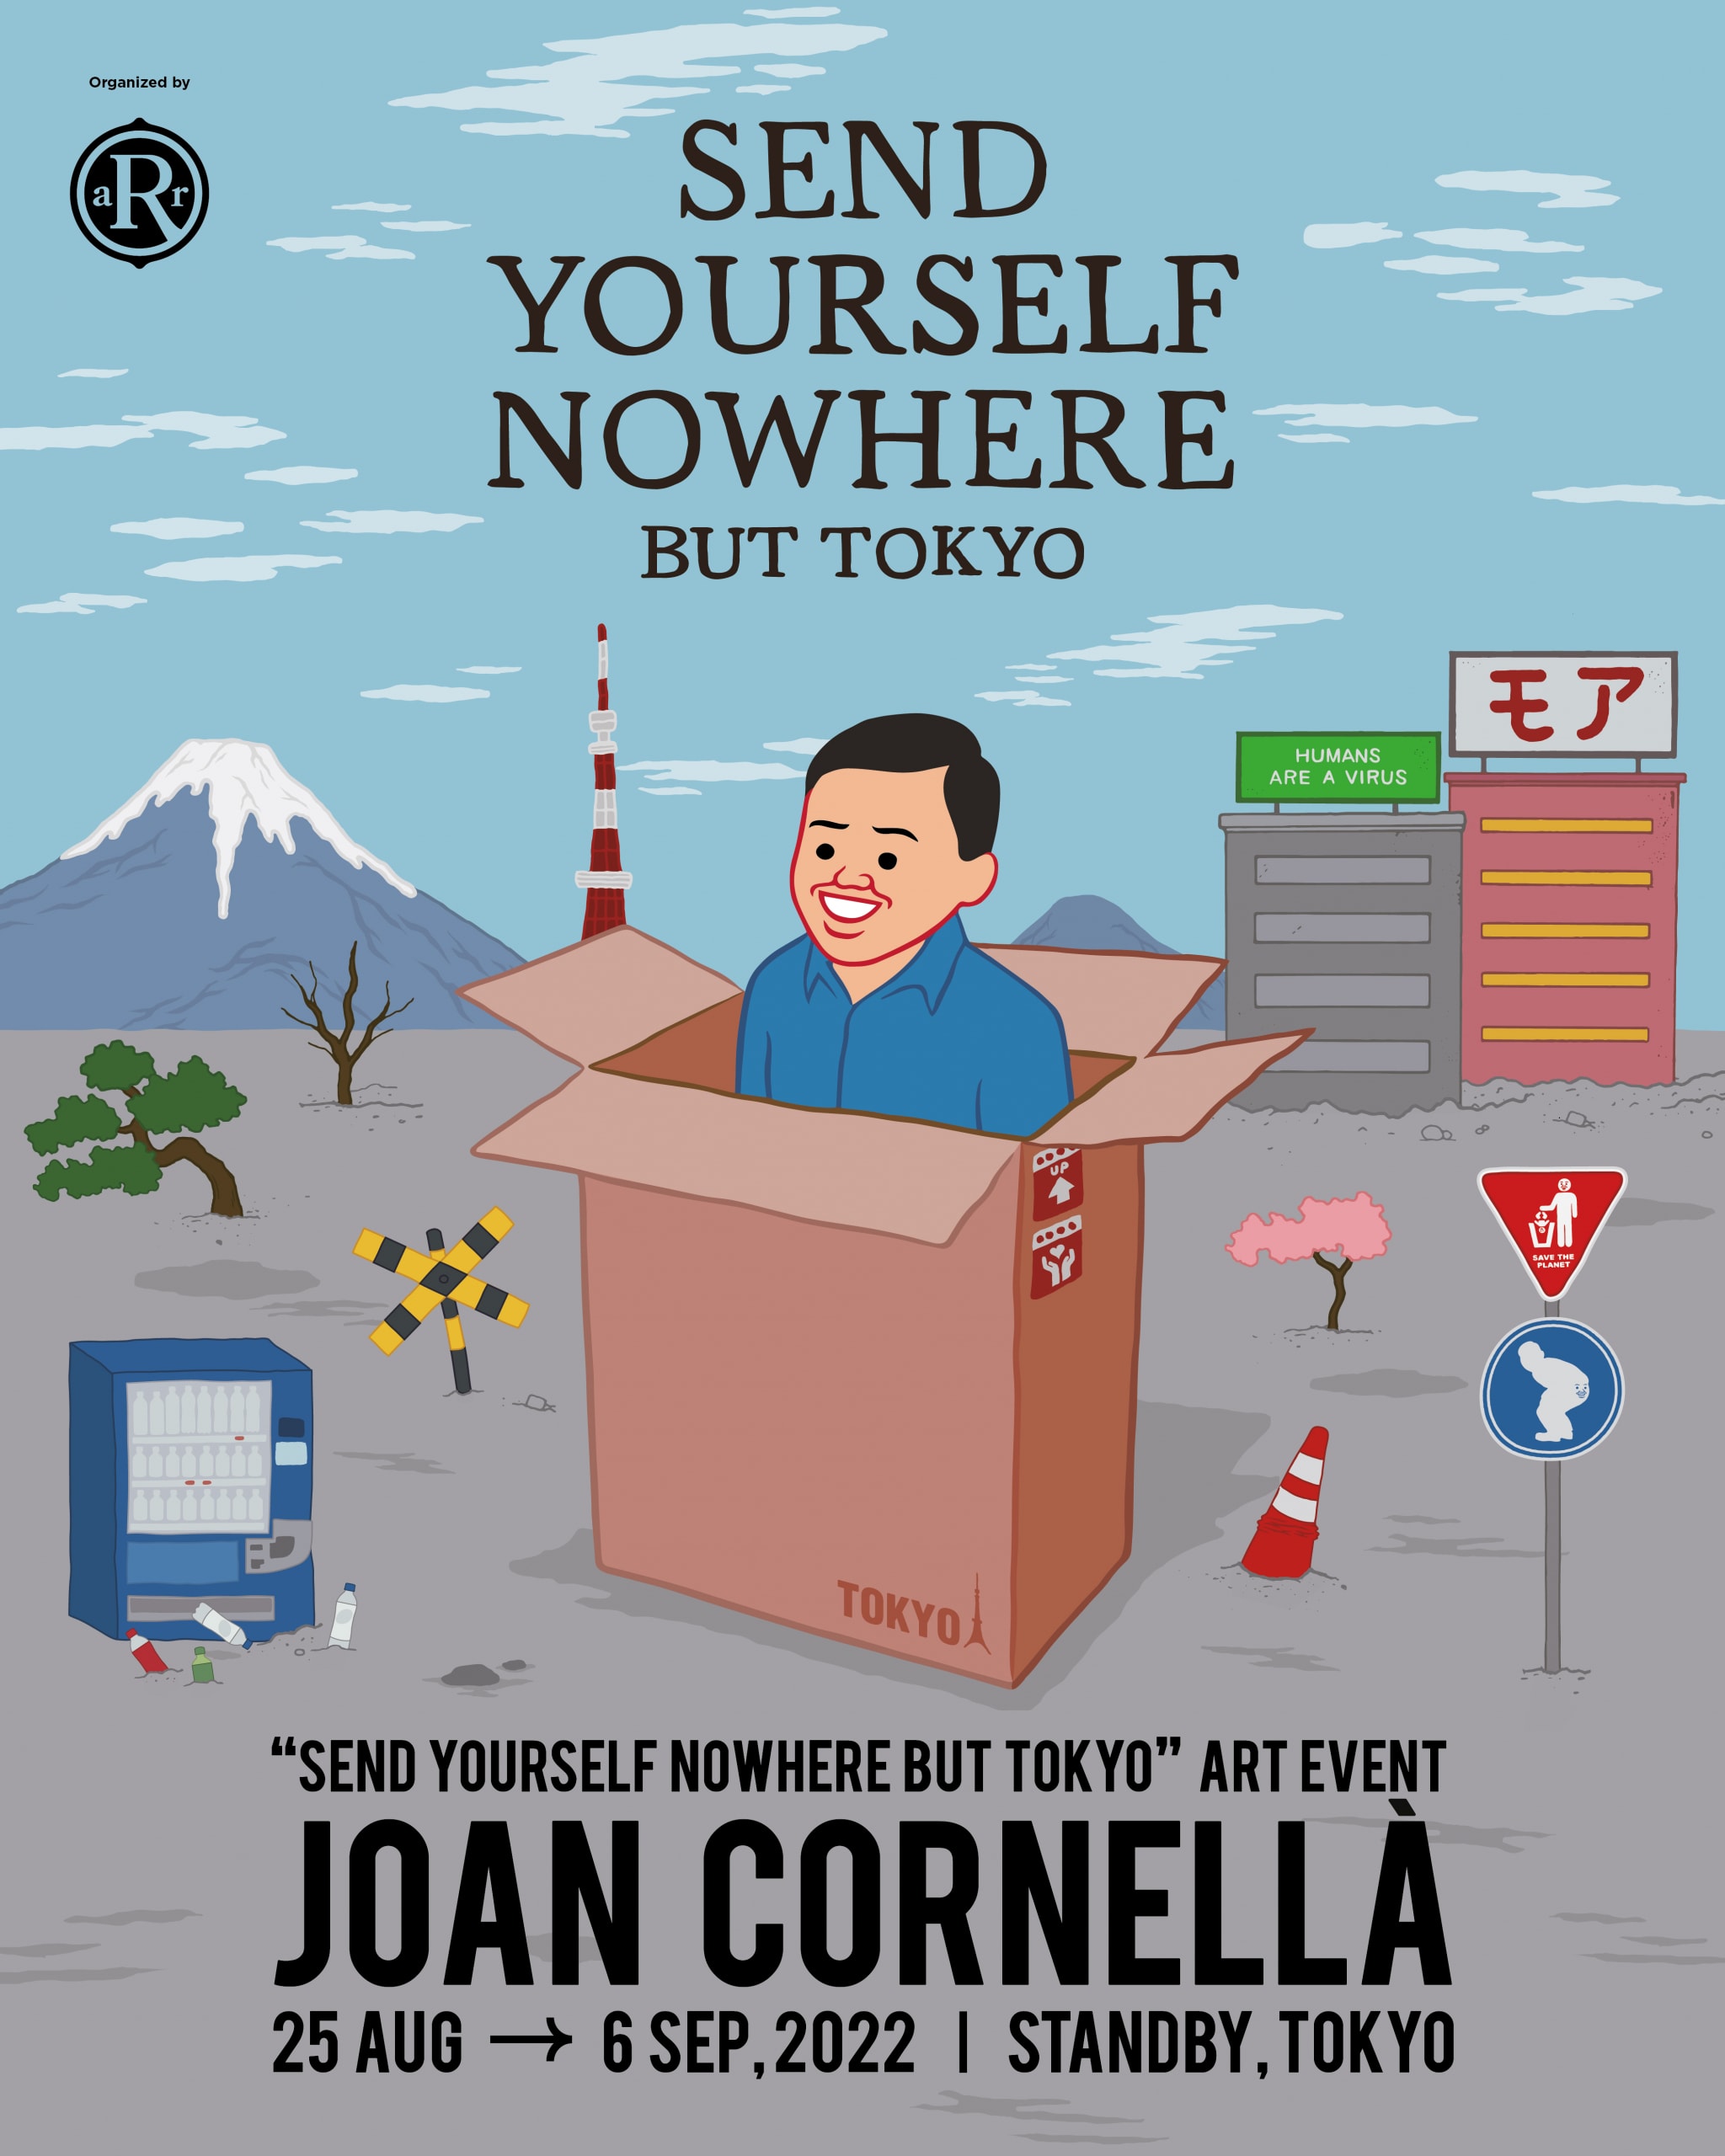 人氣藝術家 Joan Cornellà 登陸日本舉辦「SEND YOURSELF NOWHERE BUT TOKYO」藝術活動